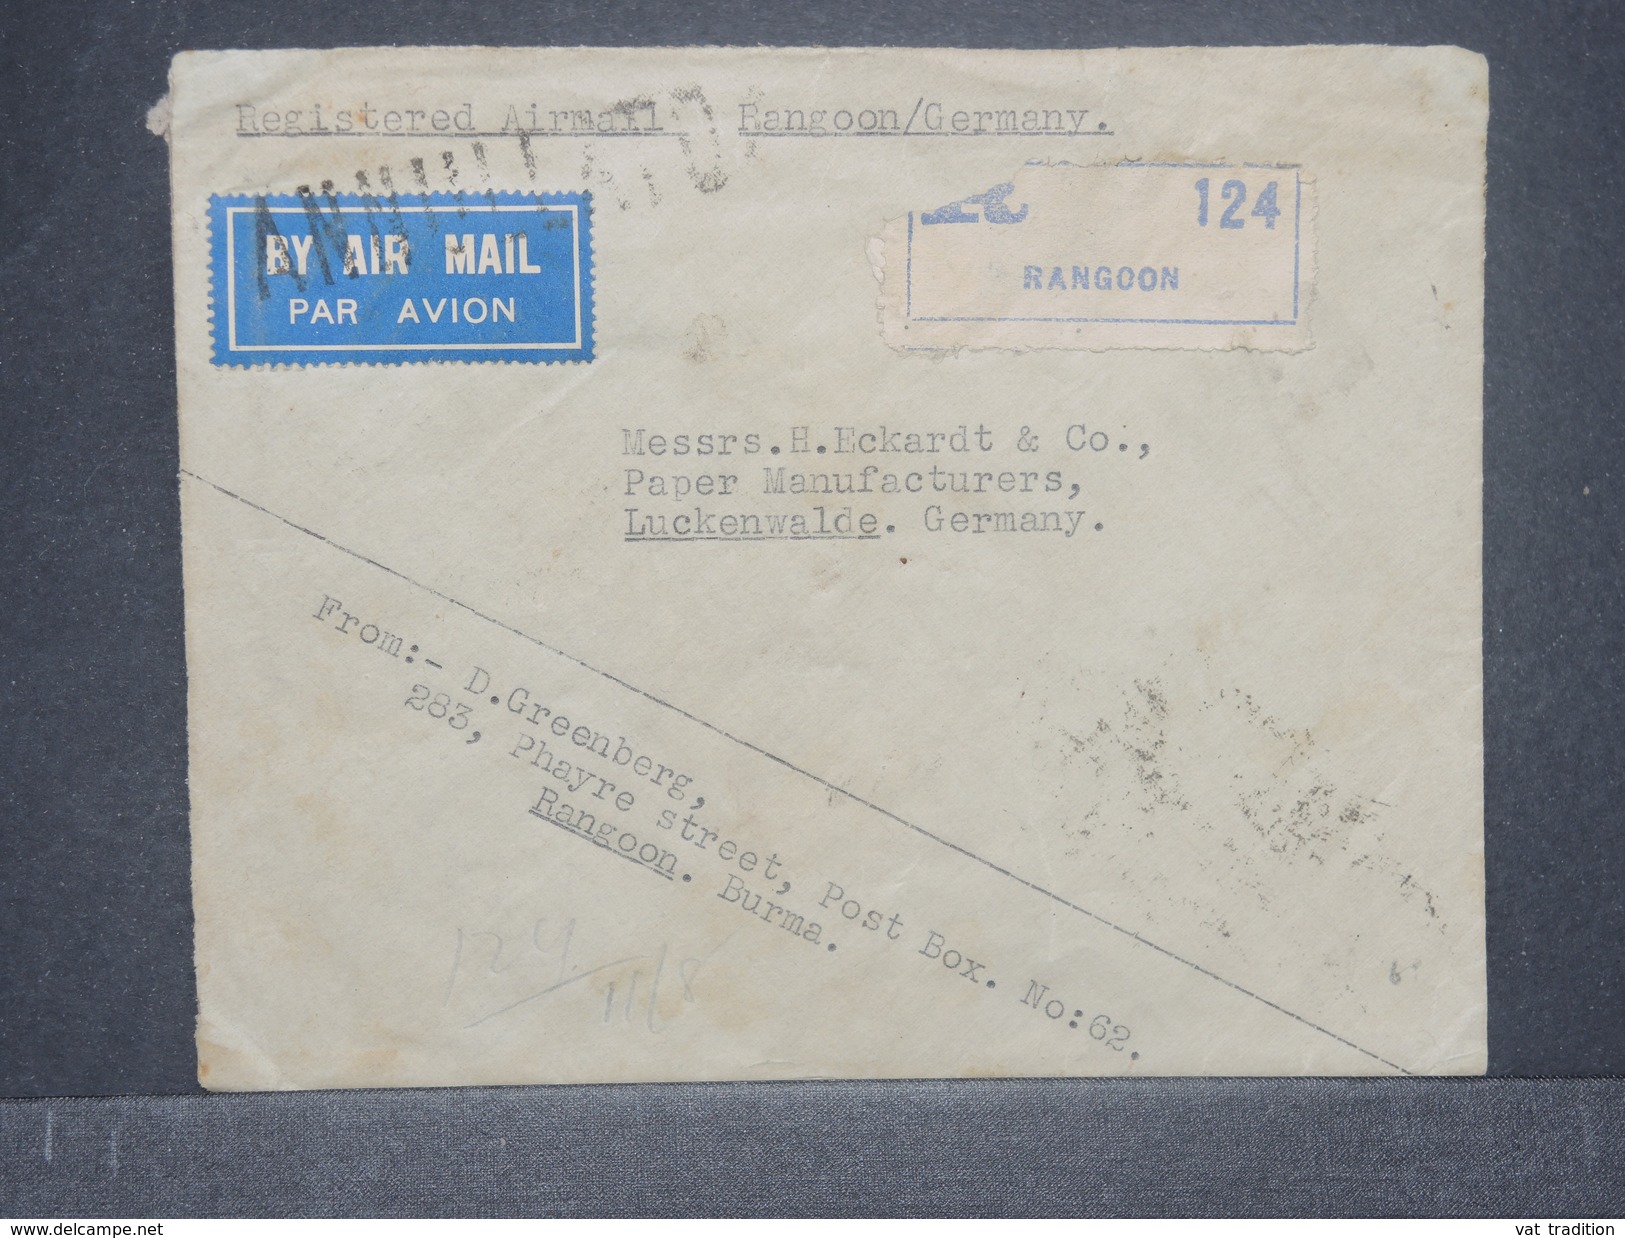 INDES ANGLAISE- Enveloppe En Recommandé De Rangoon Pour L 'Allemagne En 1933 , Affr. Incomplet Au Verso - L 8404 - 1911-35 King George V